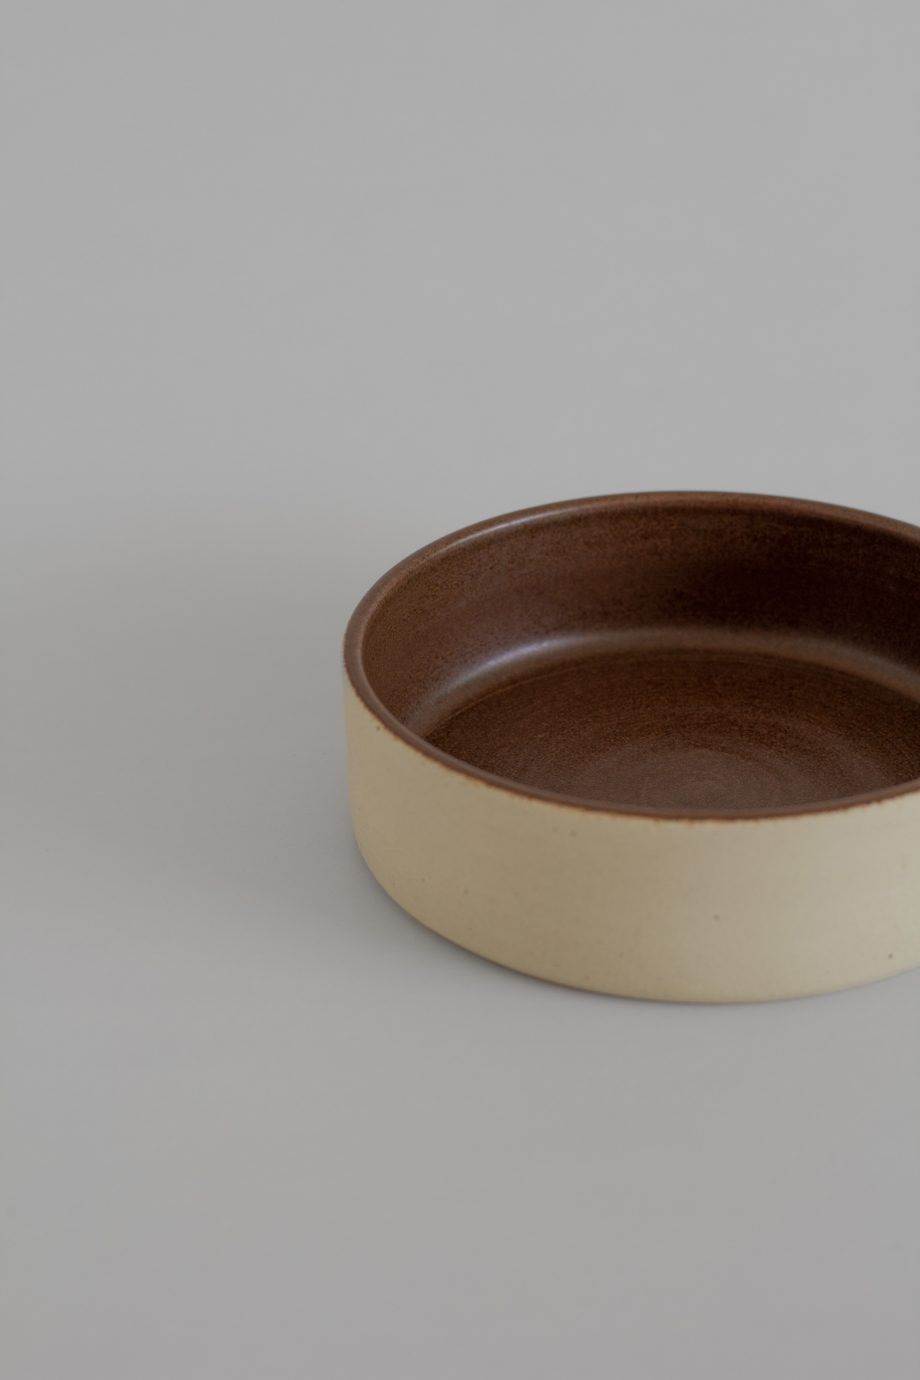 Bowl céramique artisanale avec intérieur émaillé en brun de la marque de décoration portugaise O Cactuu.